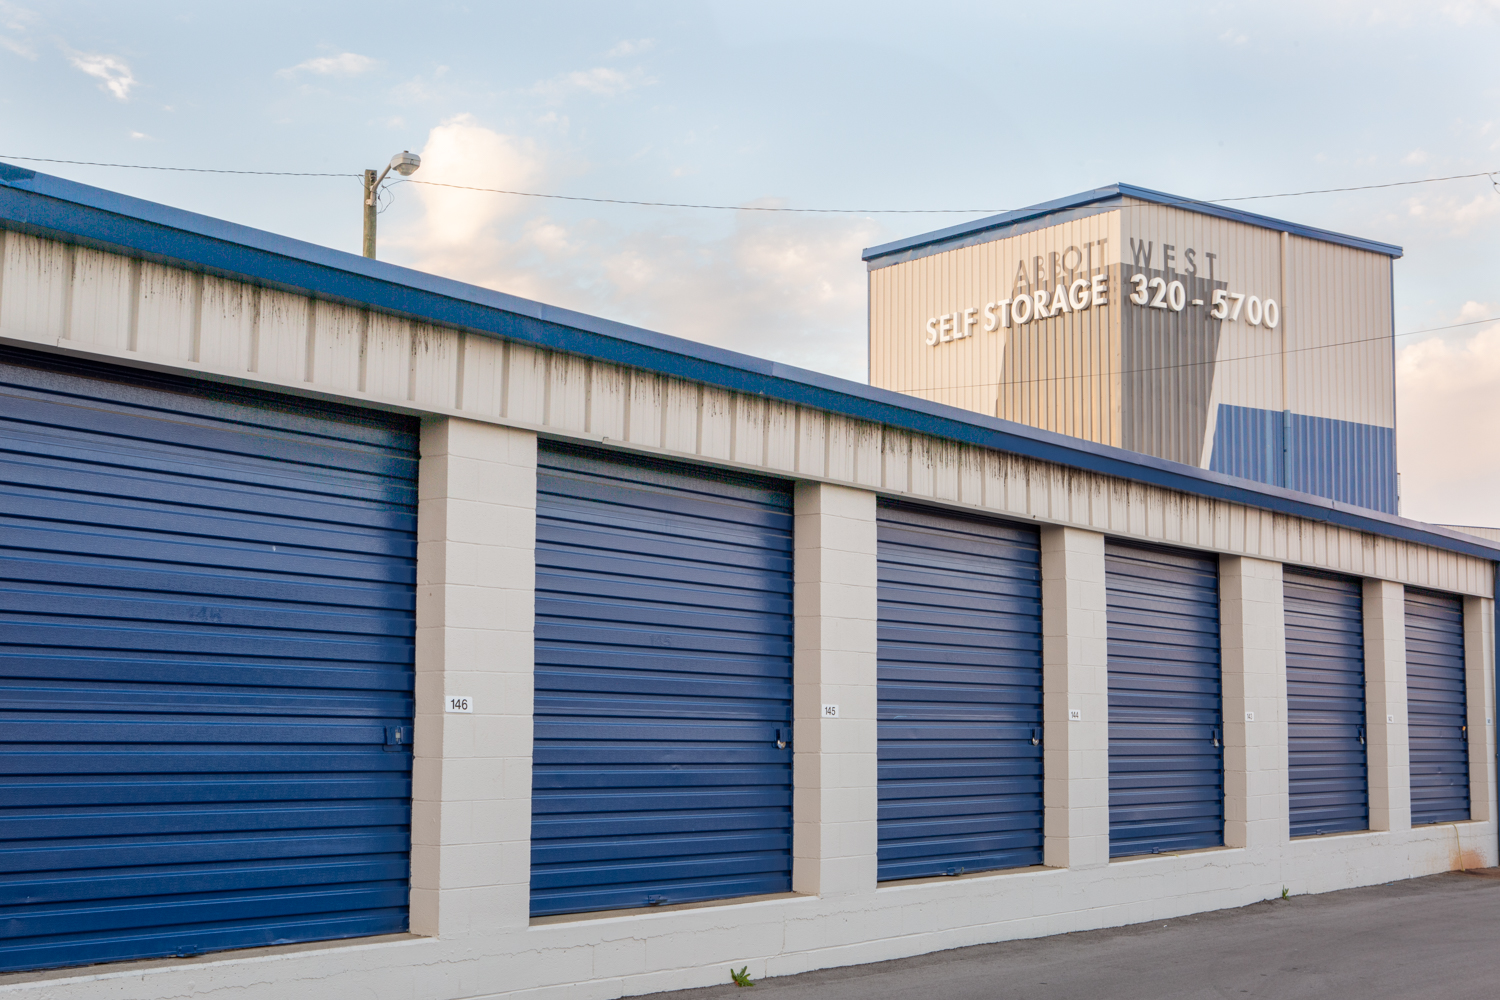 Abbott West Self Storage - blue doors